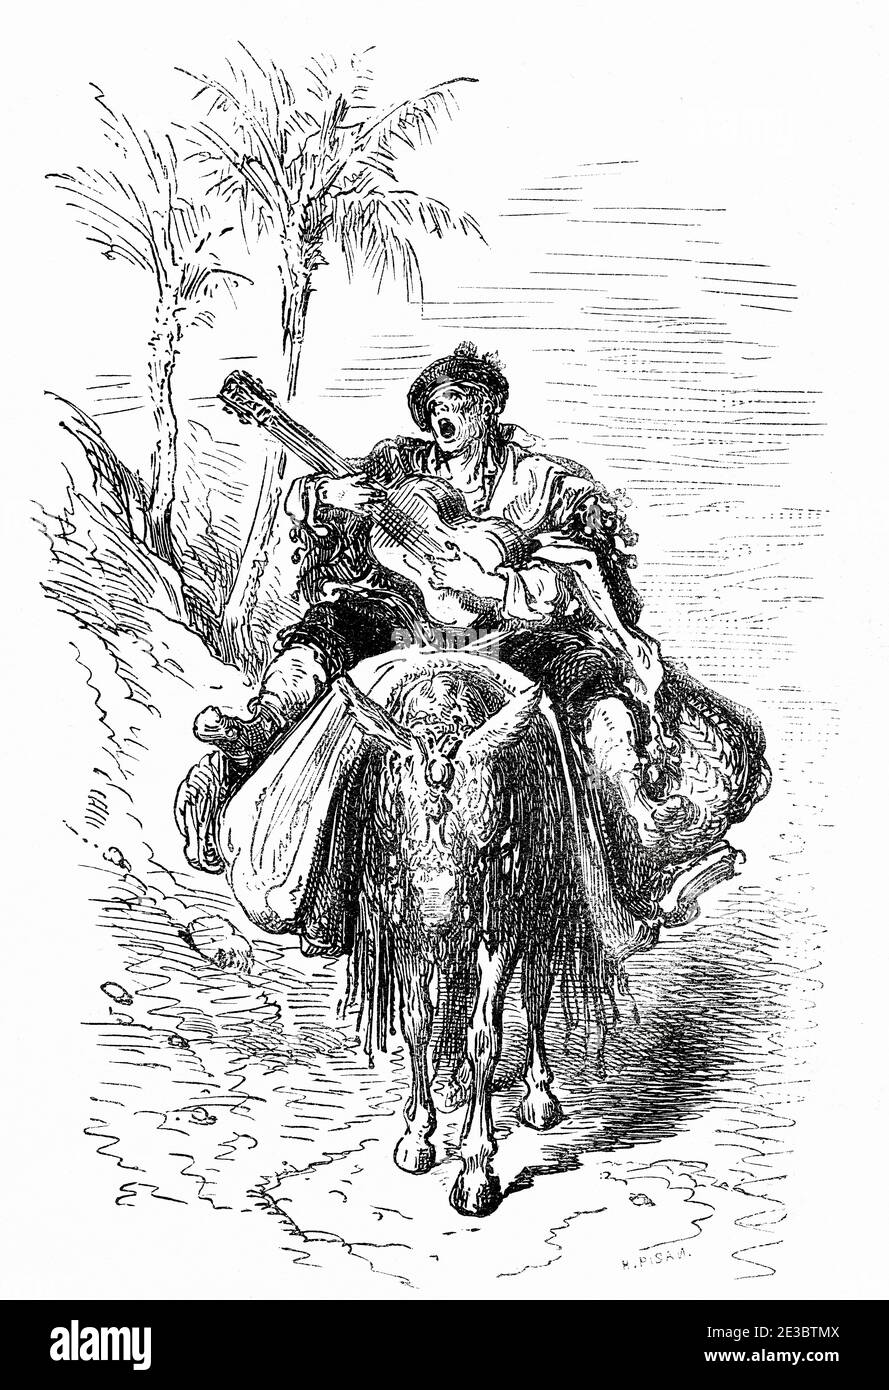 Espagnol gitan muleteer à cheval un âne jouant de la guitare et du chant, Comunidad Valenciana. Espagne, Europe. Illustration gravée du XIXe siècle, El Mundo en la Mano 1878 Banque D'Images